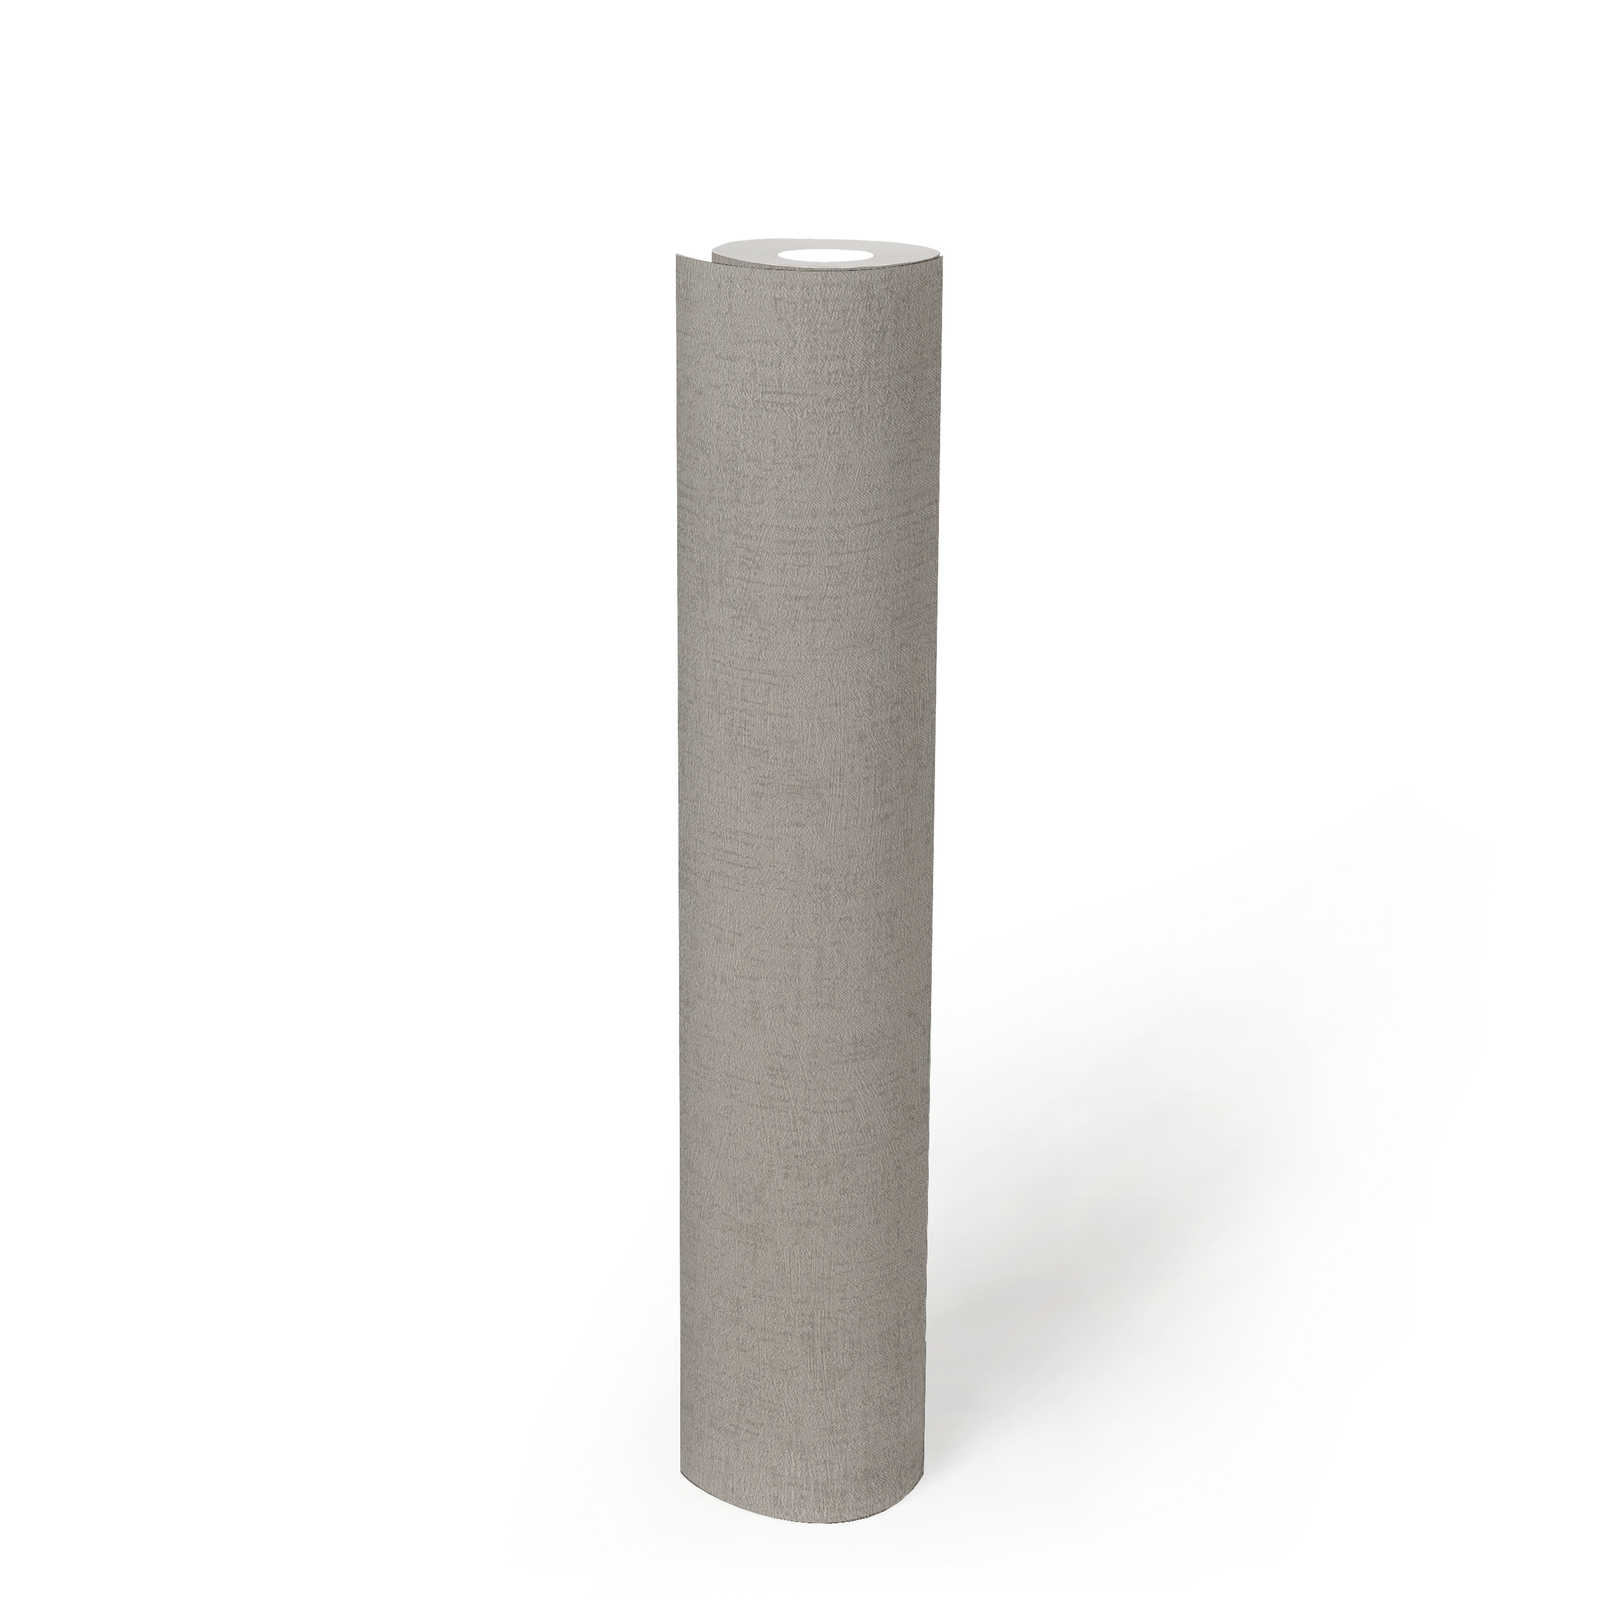             Papel pintado no tejido brillante gris con diseño de estructura - gris, metálico
        